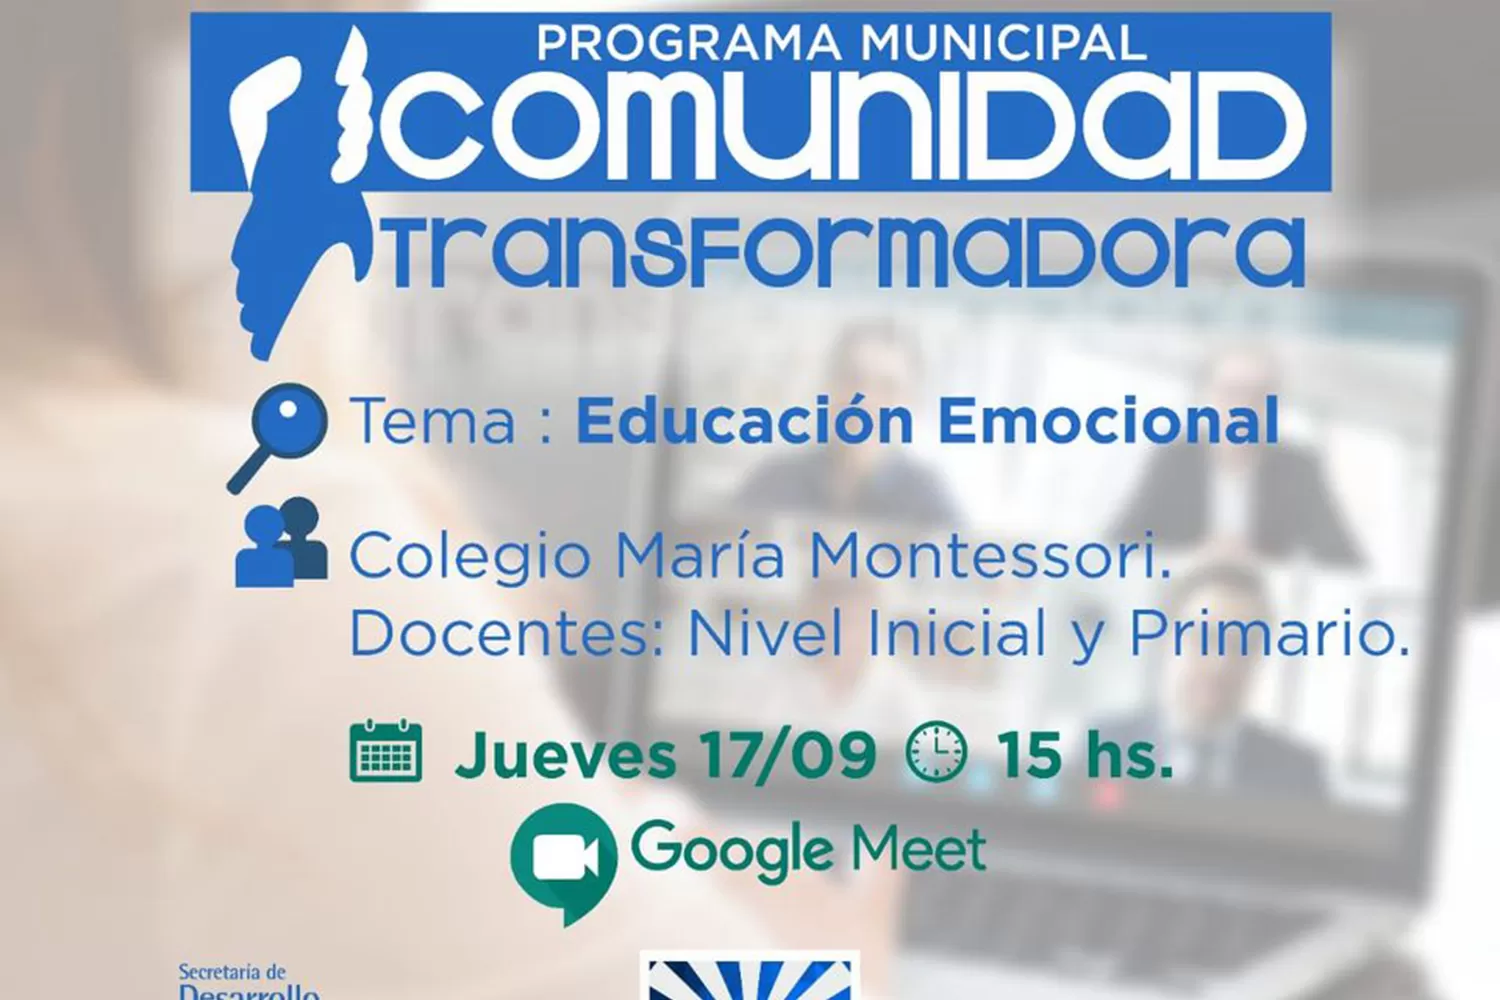 Educación emocional: programa municipal destinado a docentes, padres y alumnos